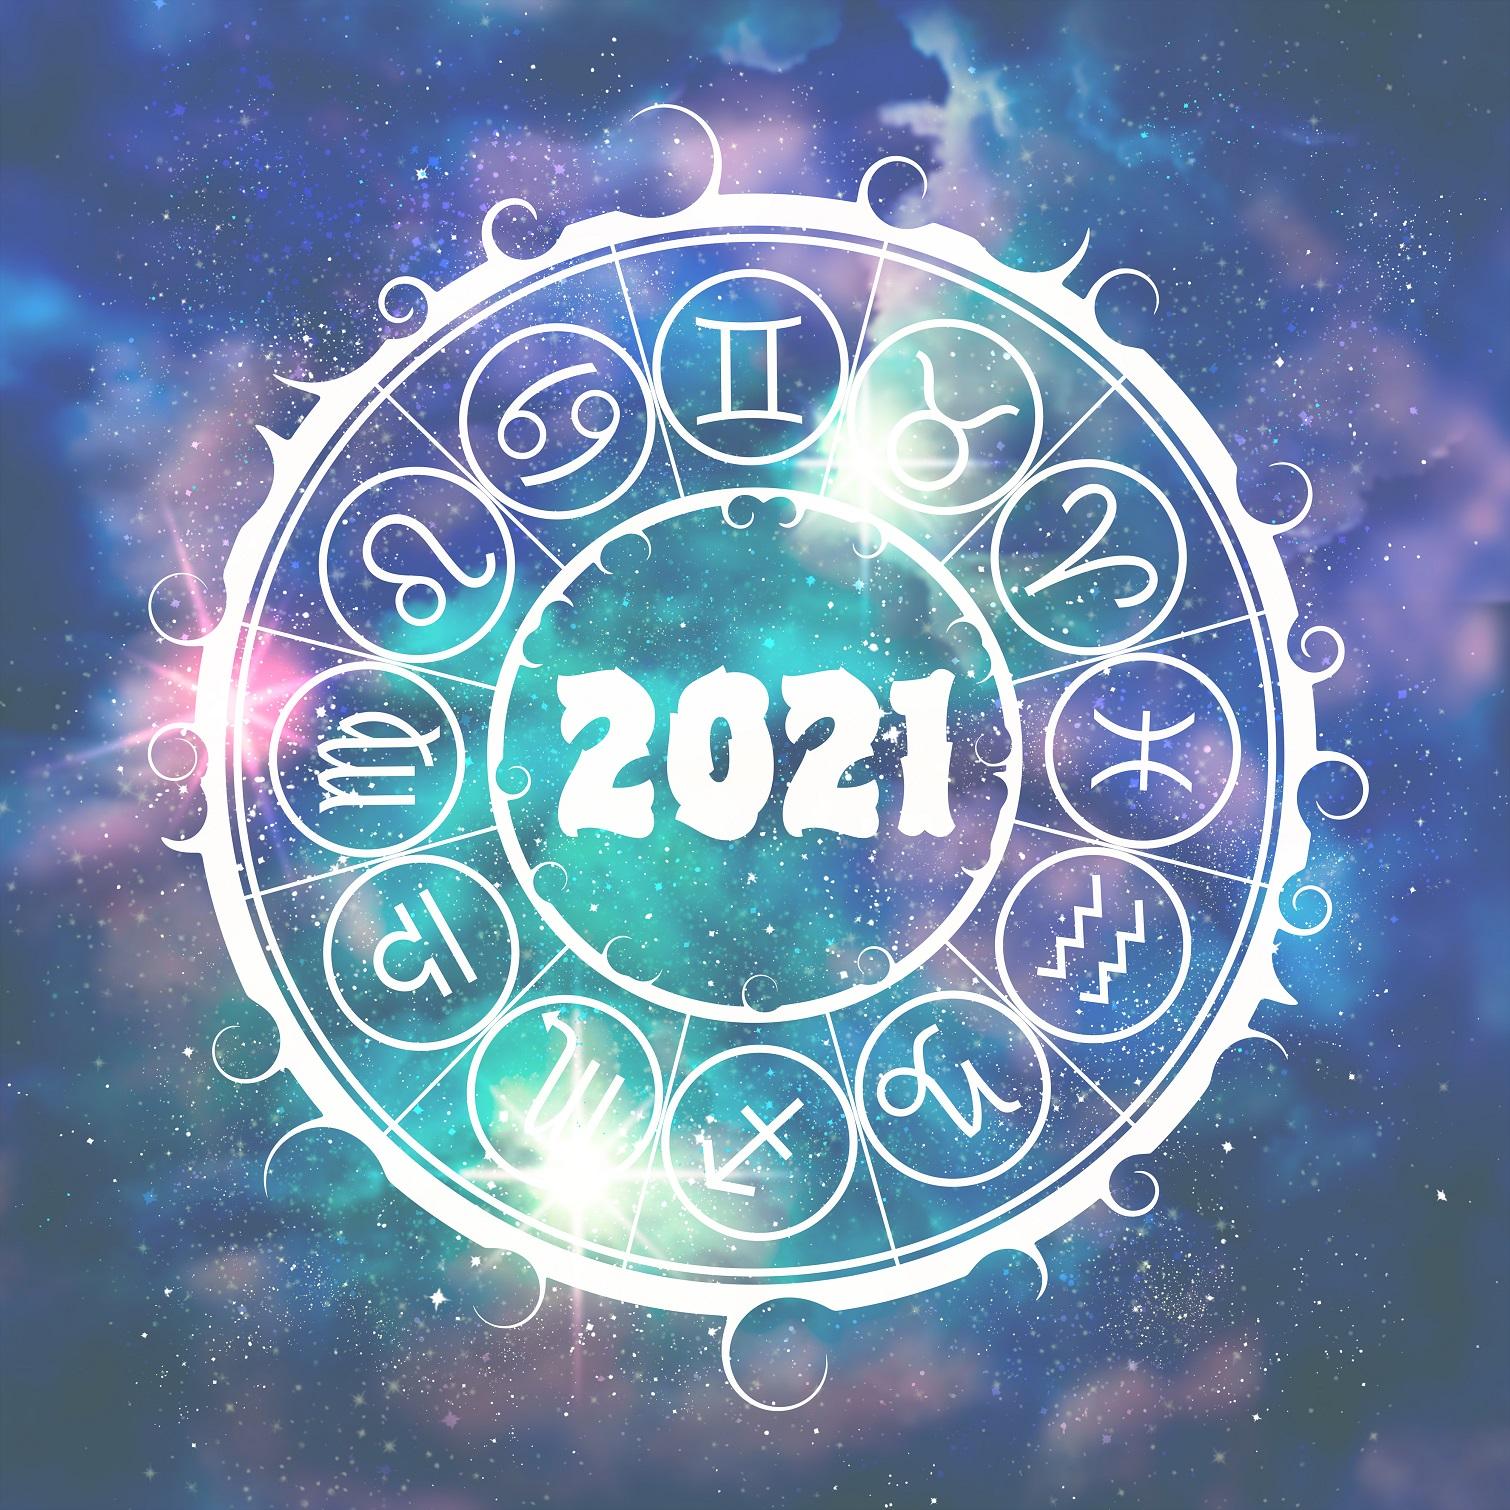 2021 o să fie cel mai bun an pentru 3 zodii, potrivit horoscopului